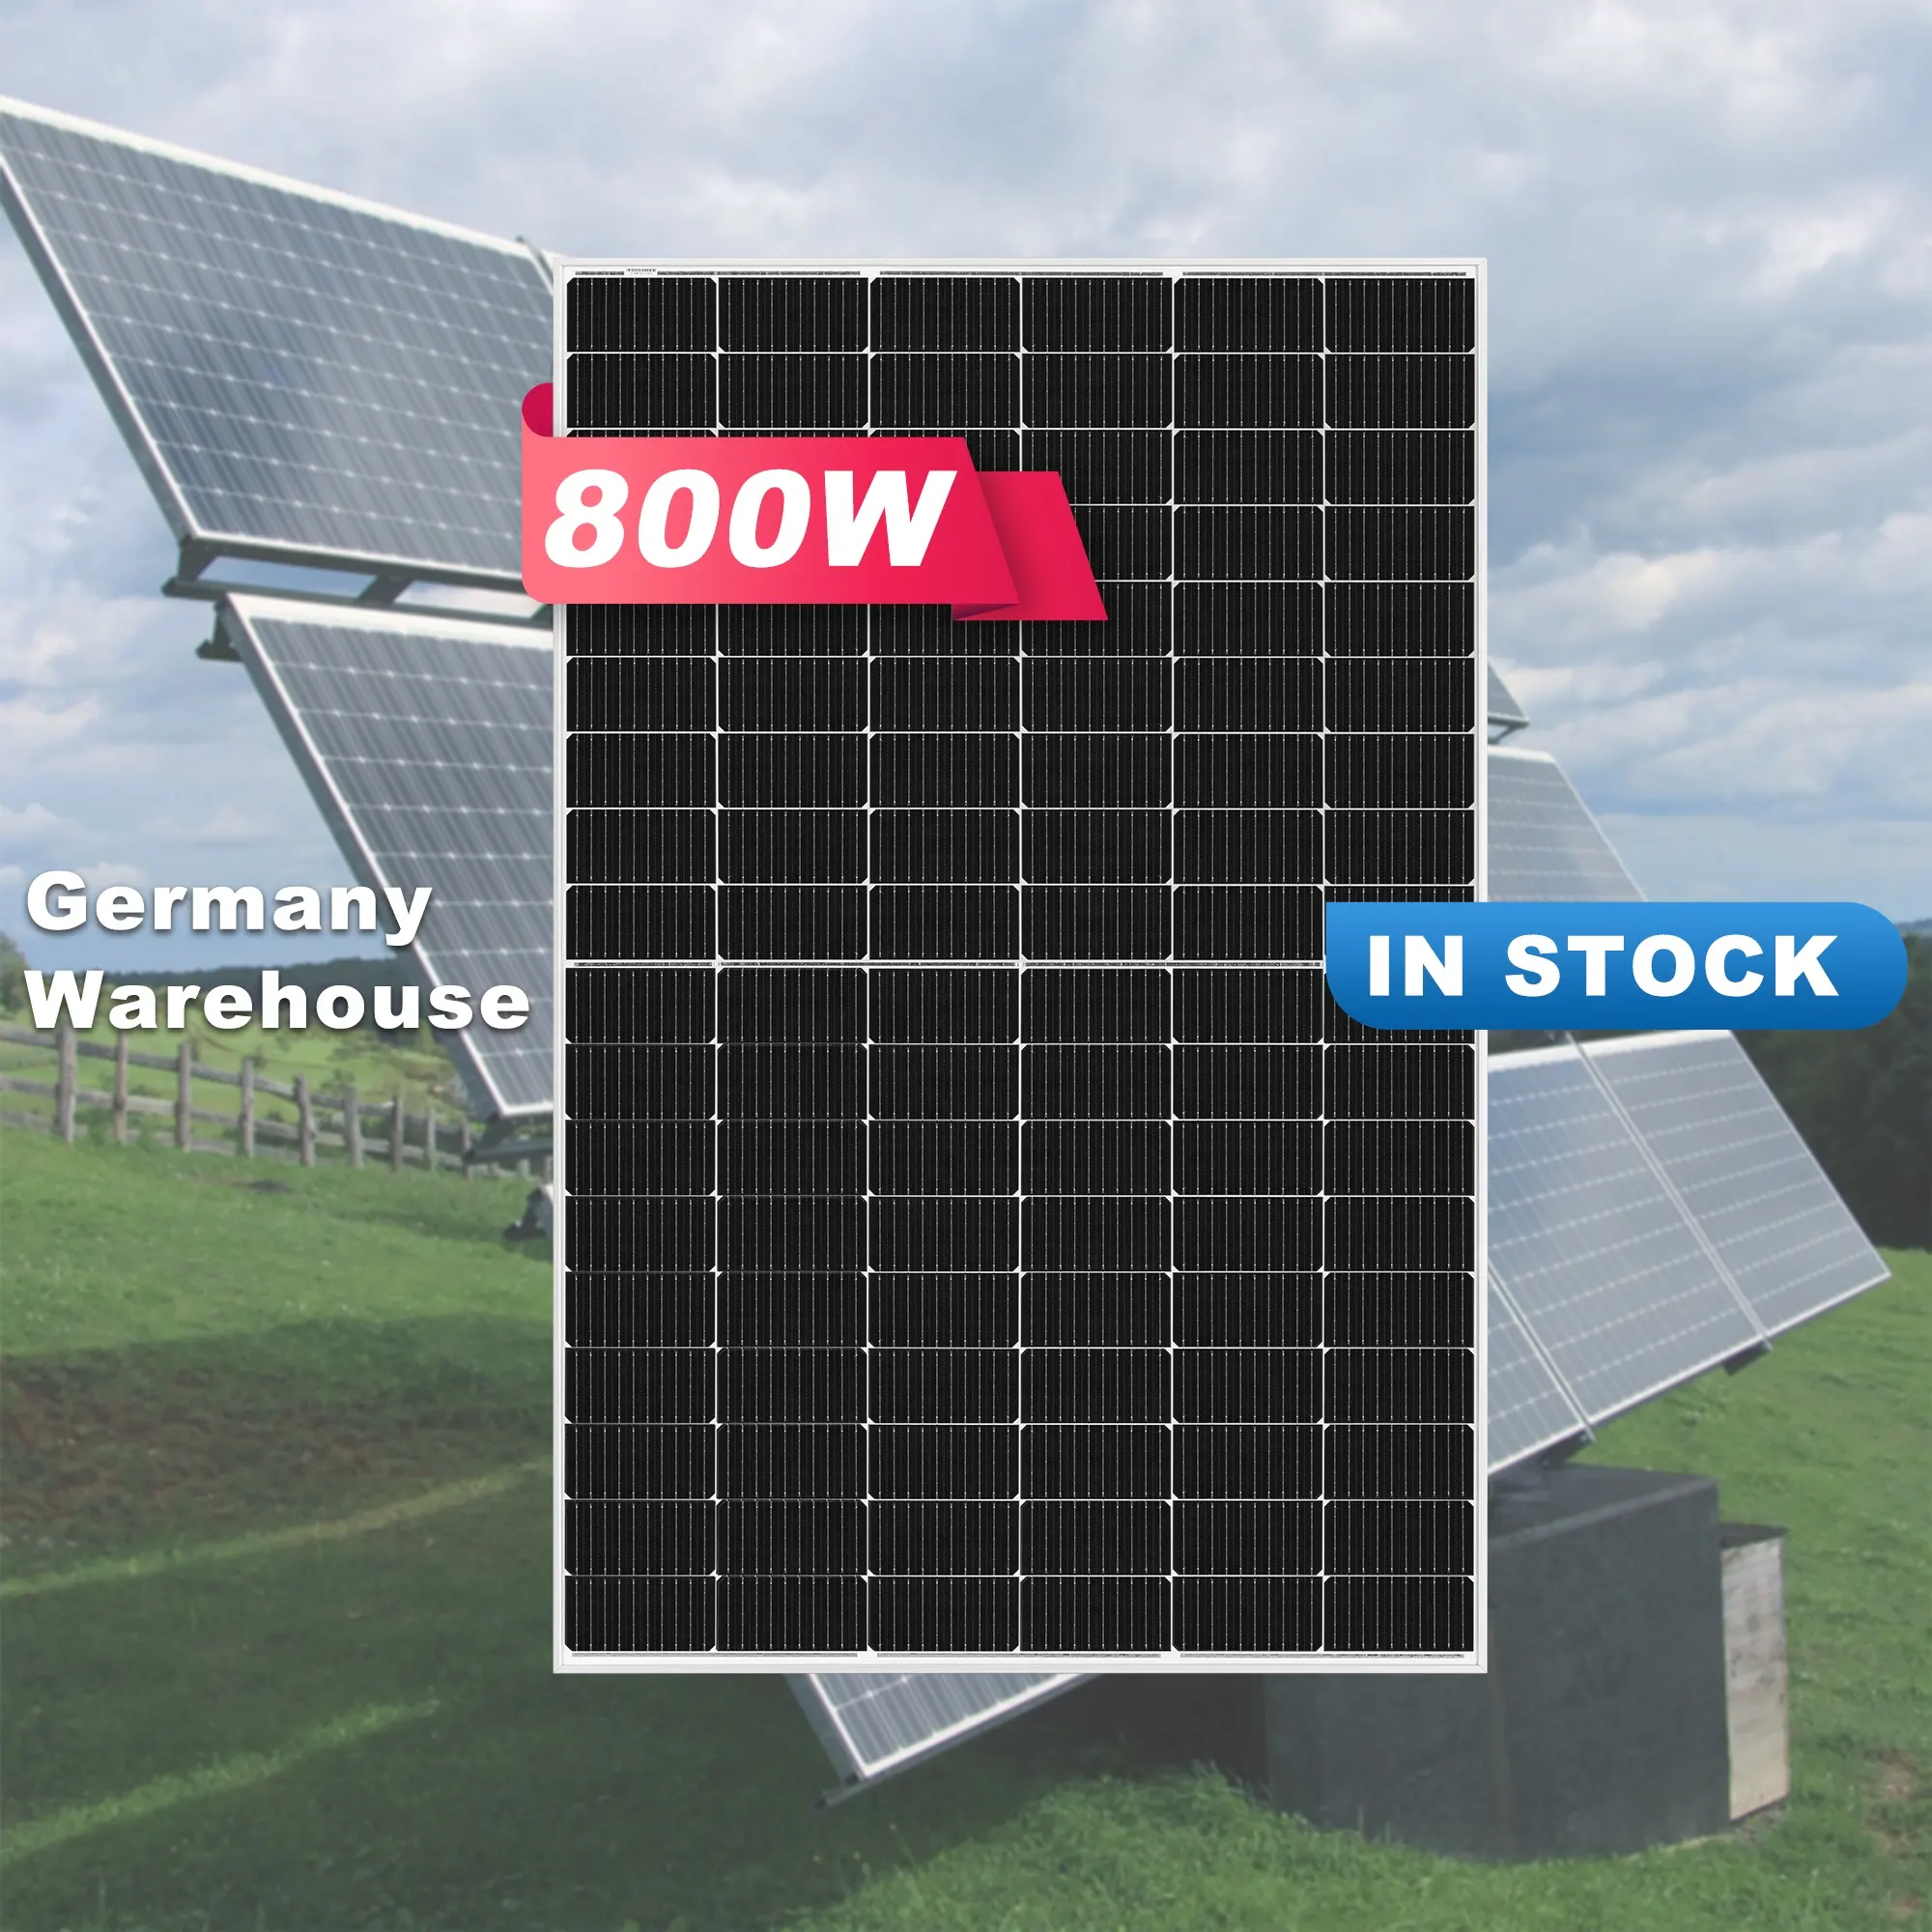 EU kho trong kho tăng TW longi SUNTECH JA Tsun Tấm pin mặt trời 400-800 W hệ thống bảng điều khiển năng lượng mặt trời mô-đun tấm pin mặt trời